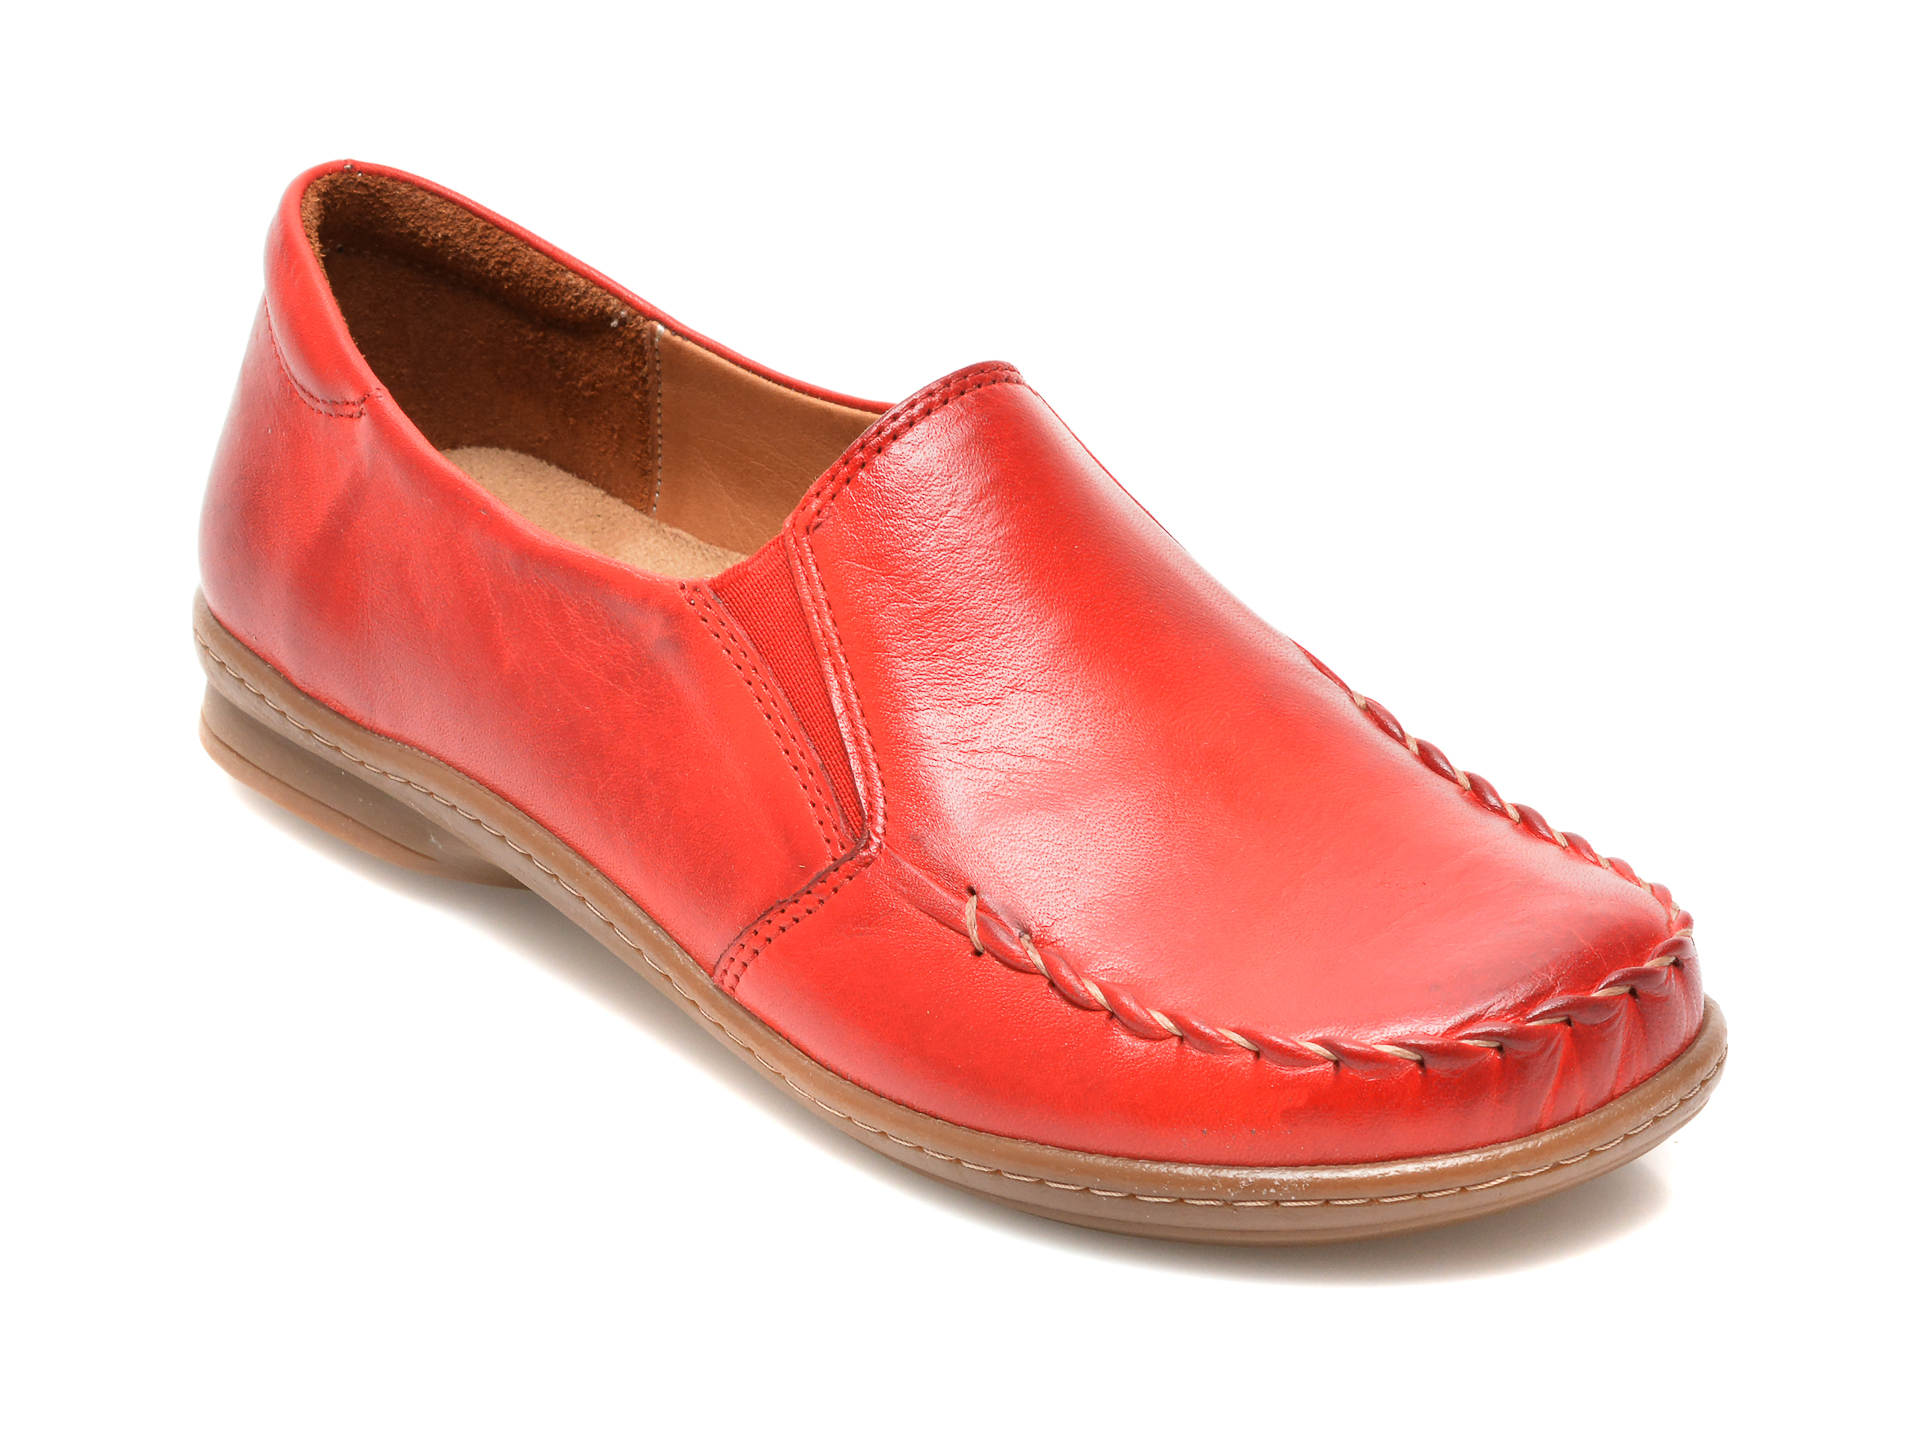 Pantofi FLAVIA PASSINI rosii, 3240, din piele naturala Flavia Passini imagine noua